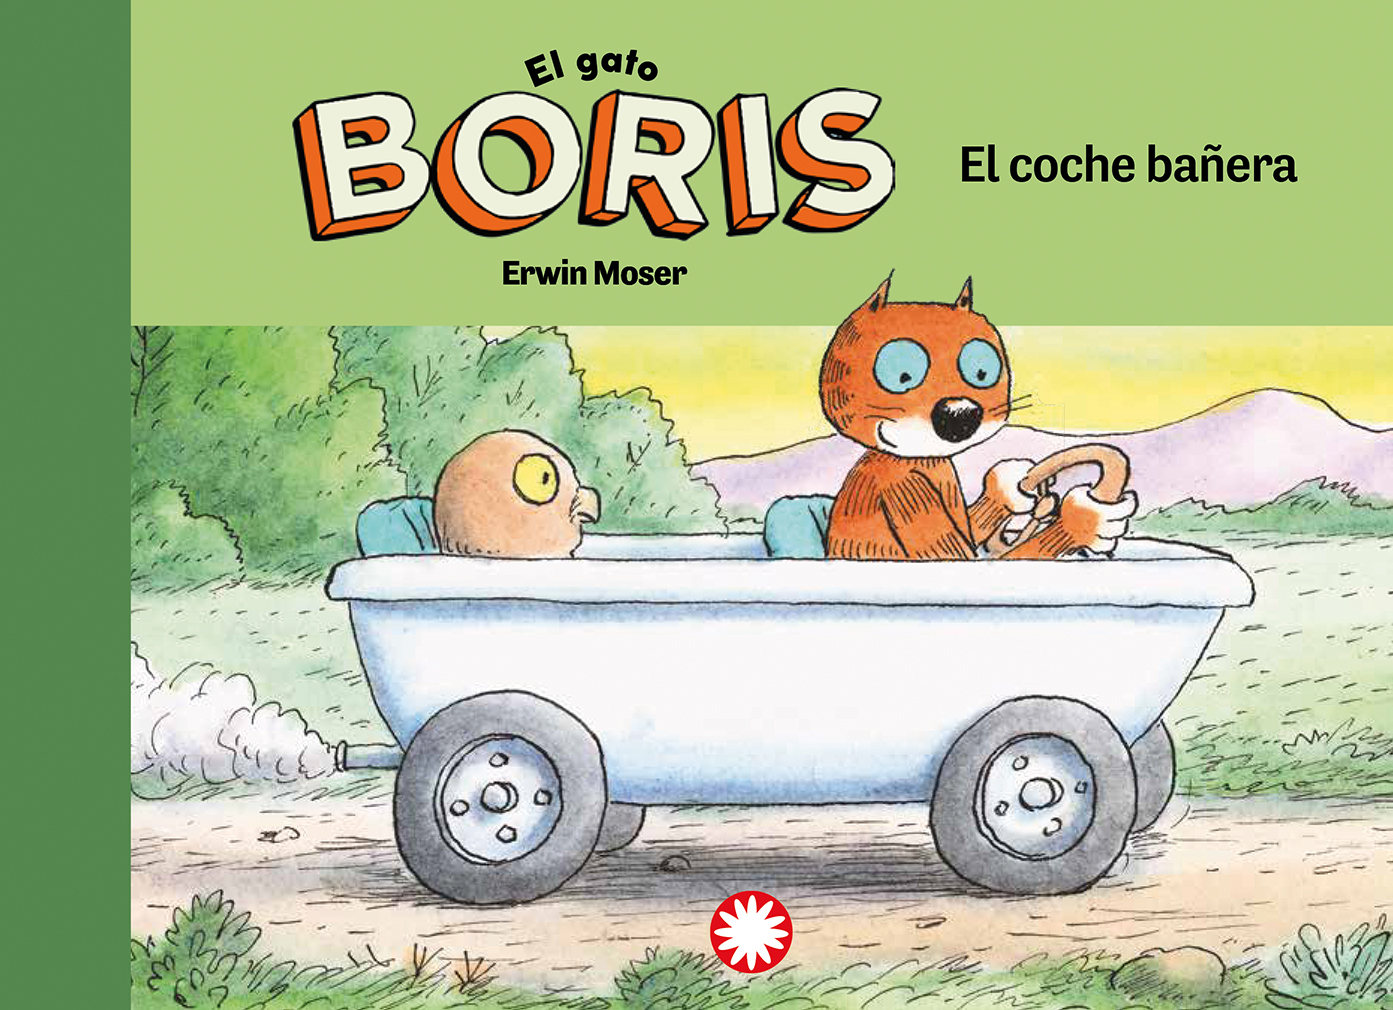 Los álbumes del gato Boris, de Erwin Moser: Canción afinada